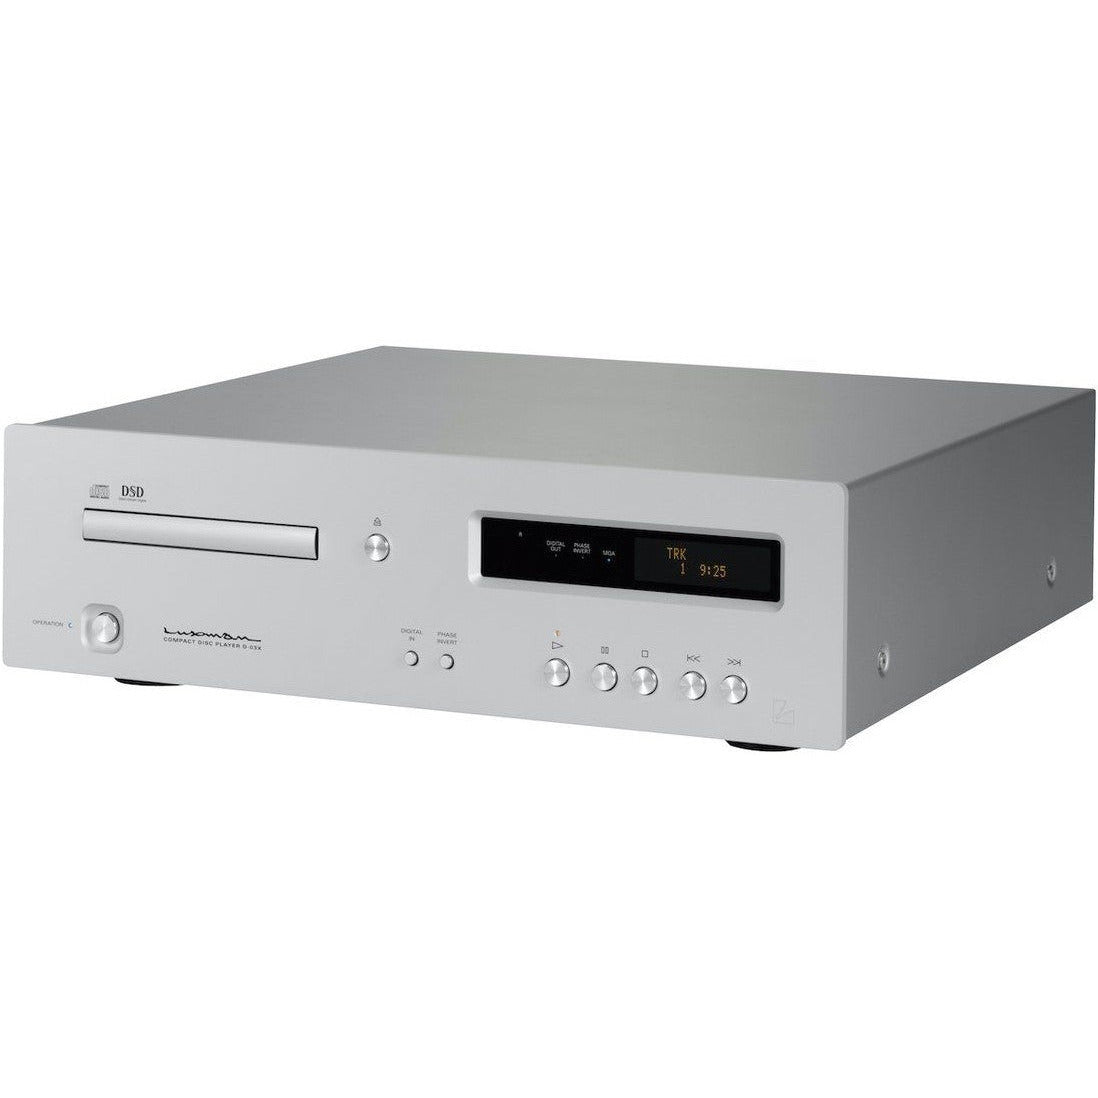 Luxman D-03X CD Player